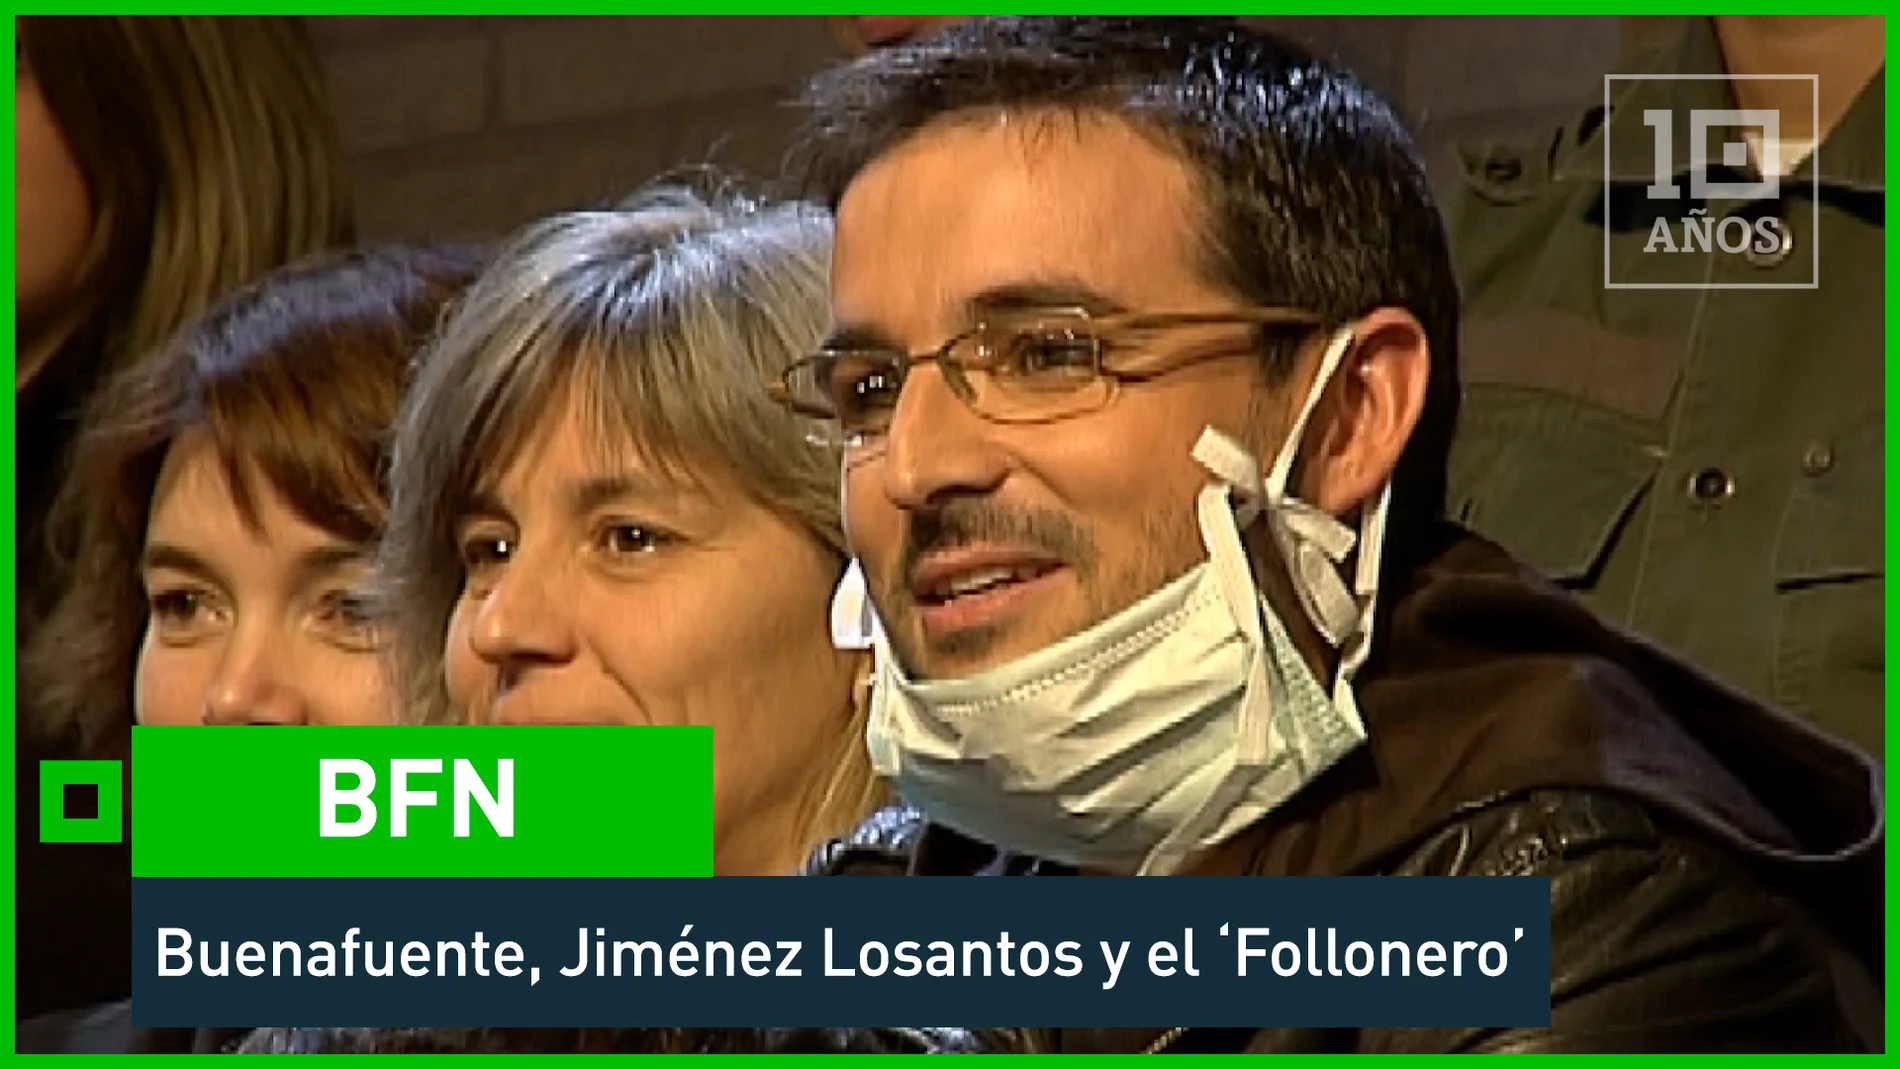 BFN - 2007. Buenafuente VS Jiménez Losantos. ‘El follonero’ aviva el conflicto - laSexta 15º aniversario